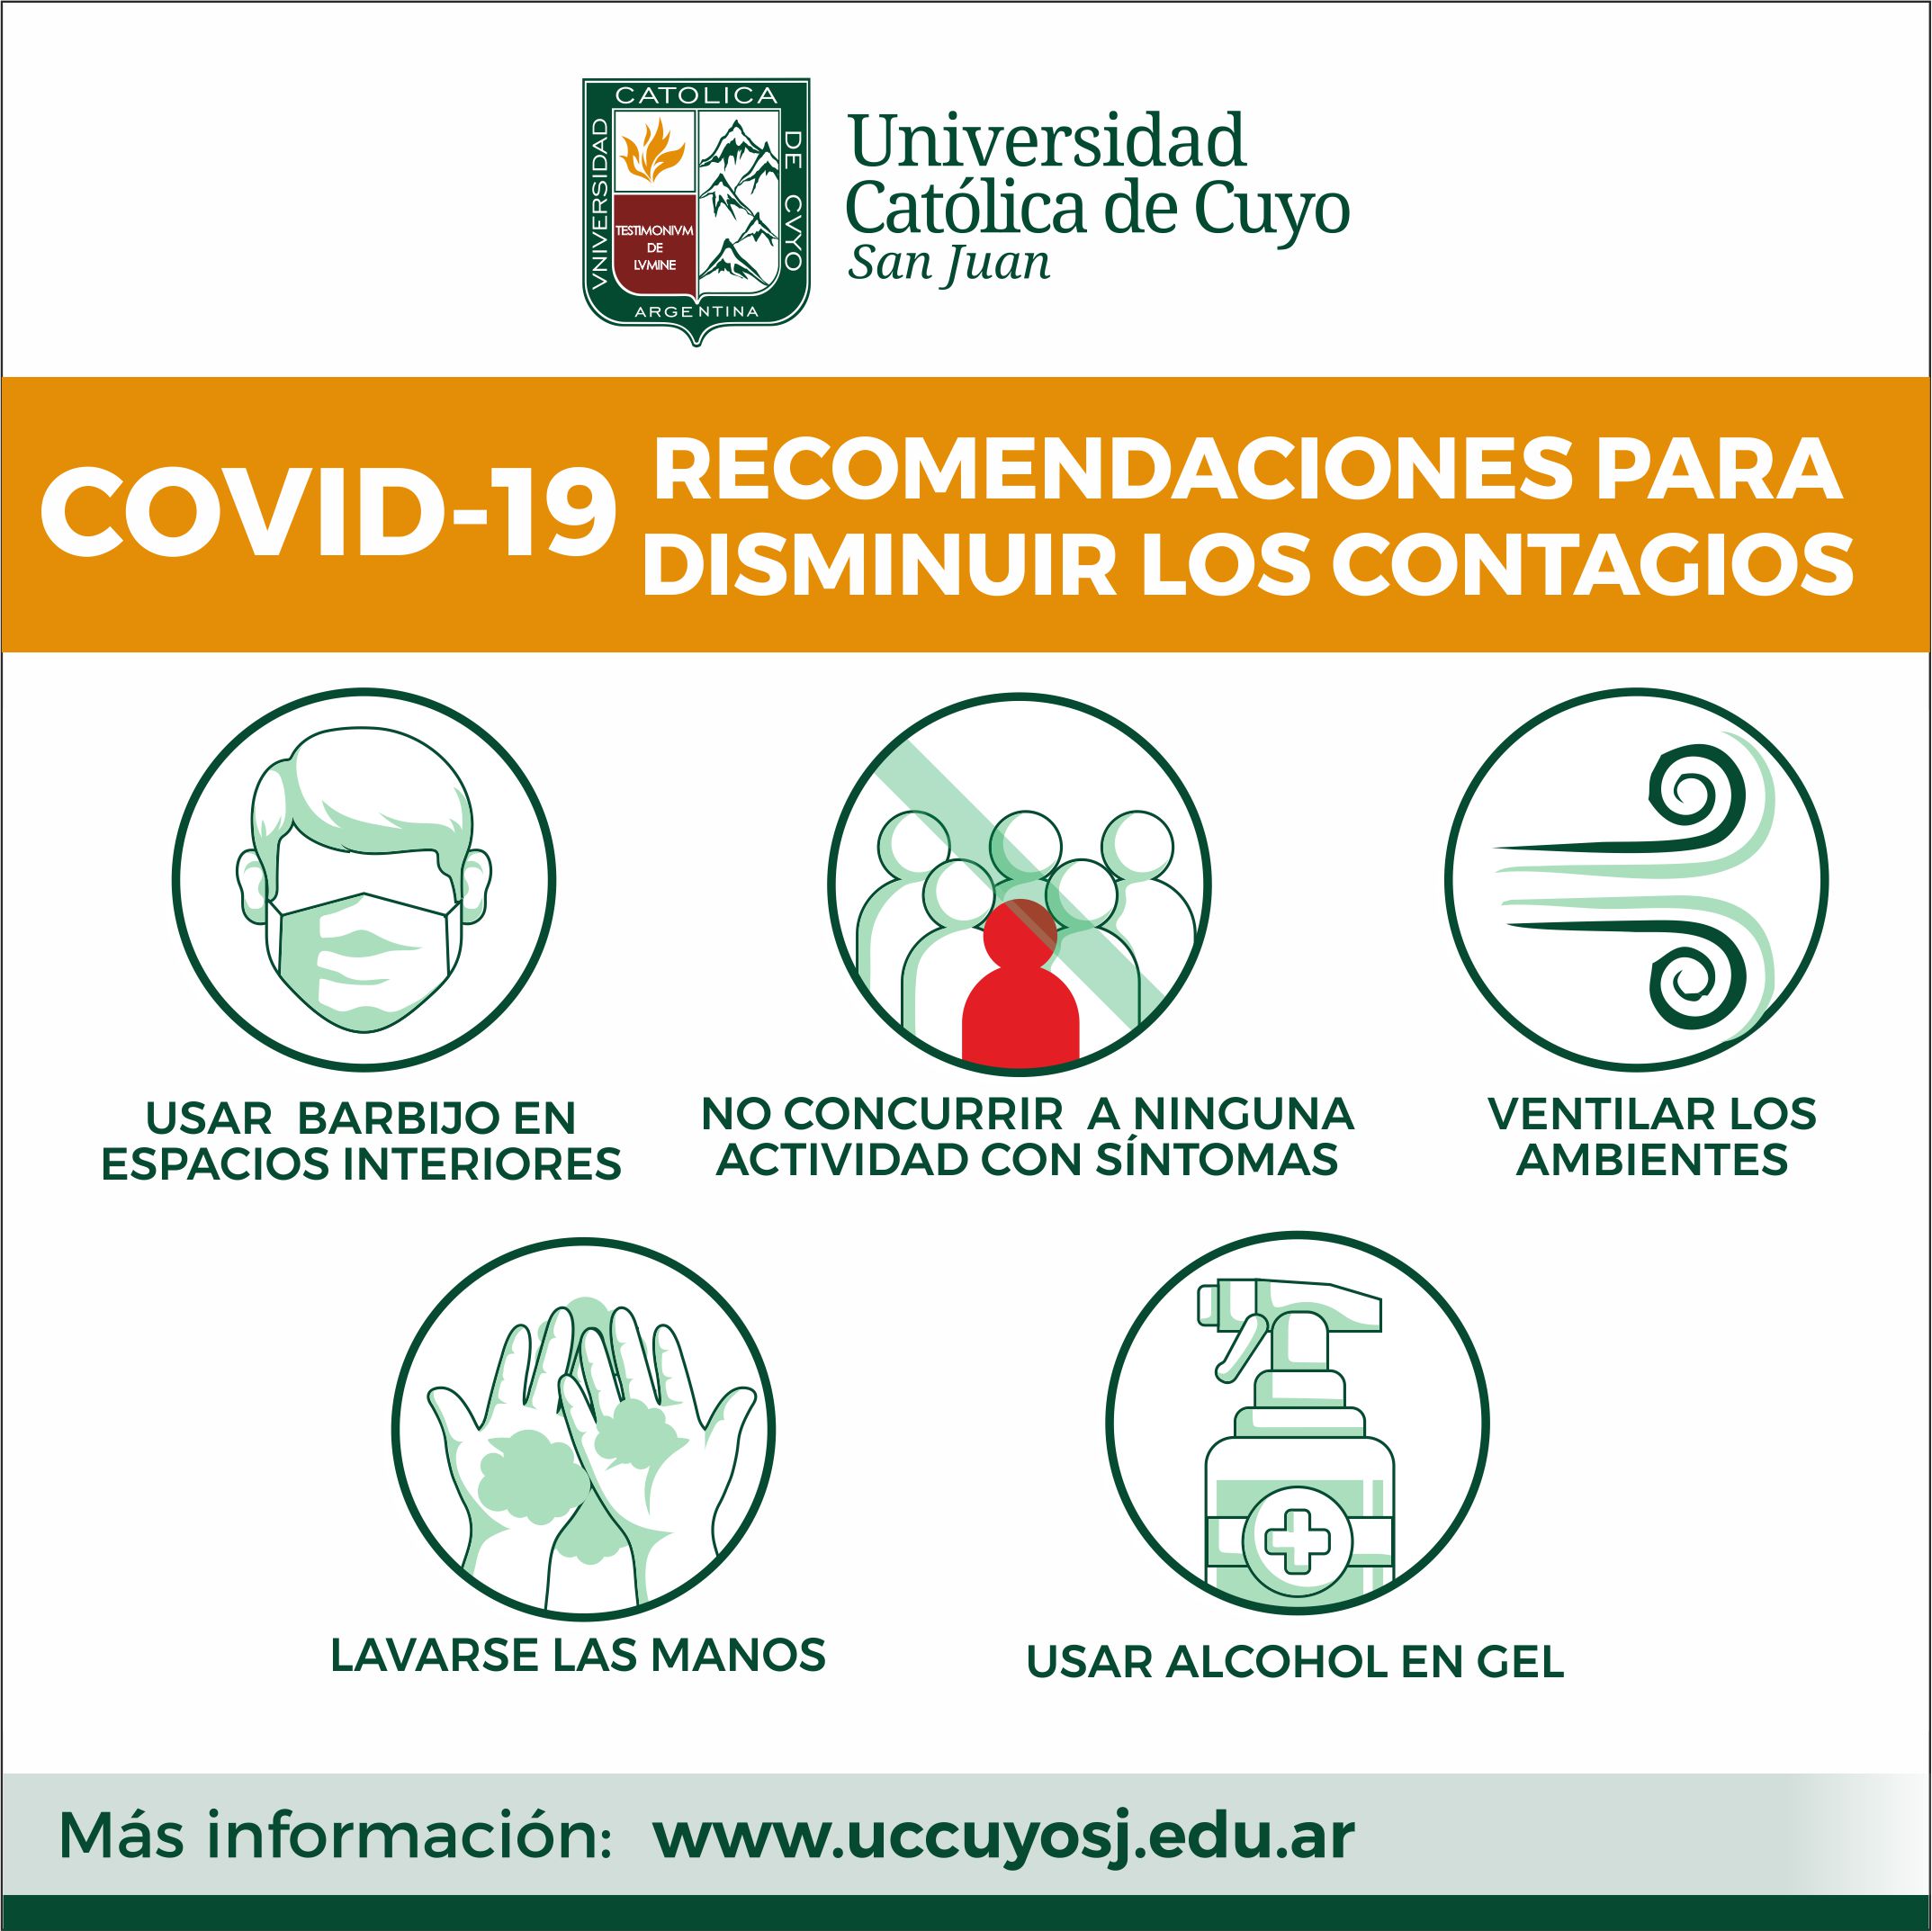 COVID-19 RECOMENDACIONES PARA DISMINUIR LOS CONTAGIOS